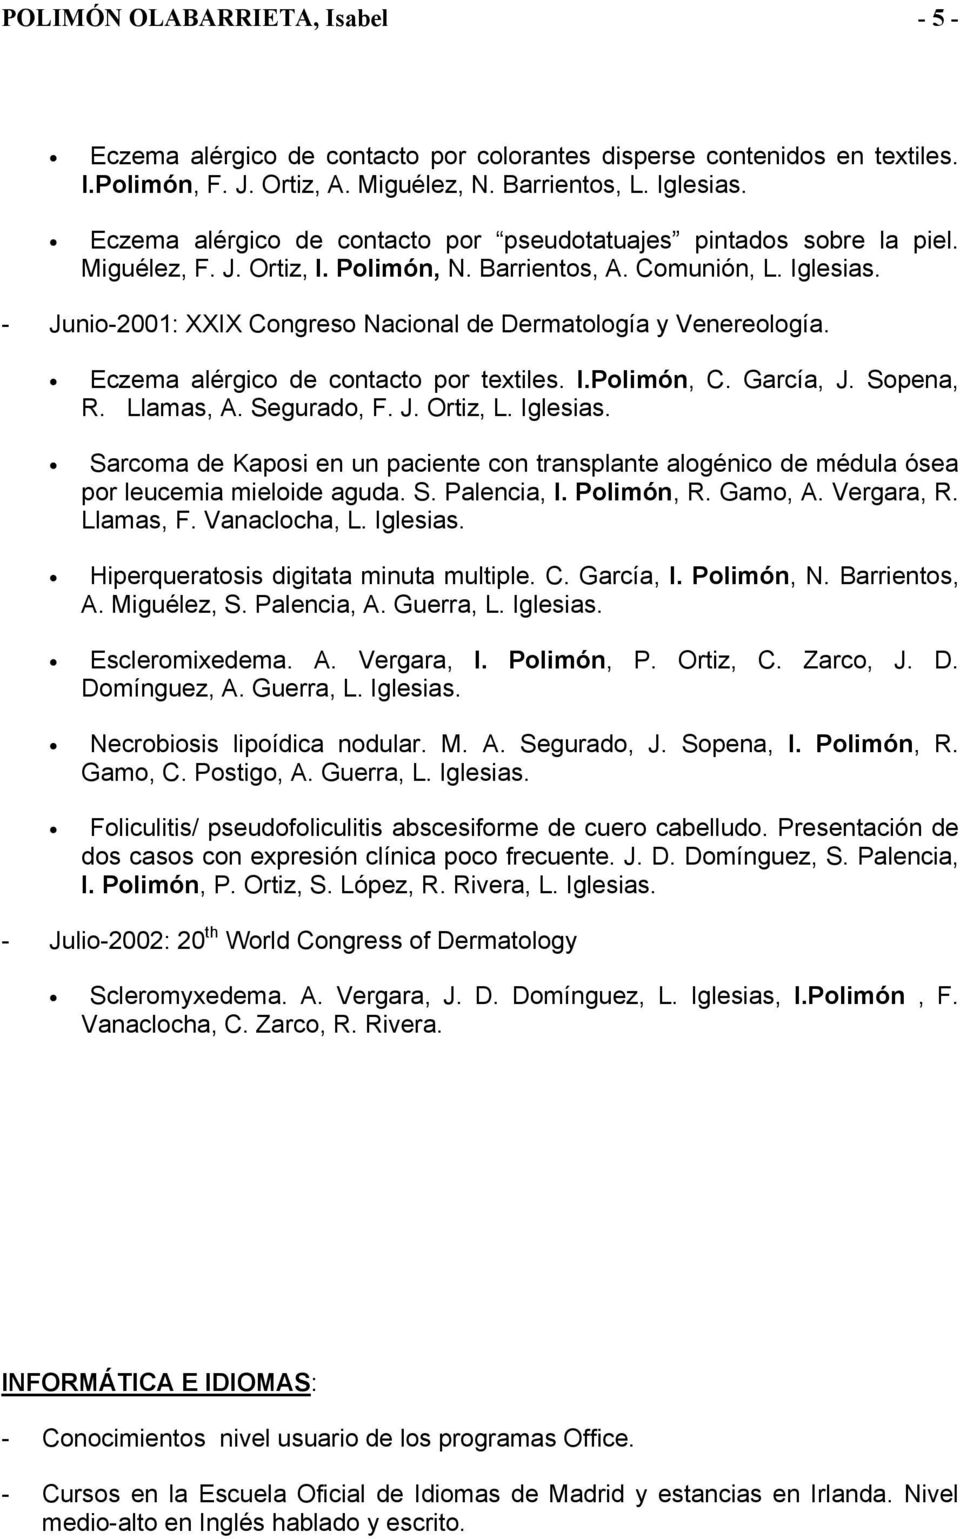 - Junio-2001: XXIX Congreso Nacional de Dermatología y Venereología. Eczema alérgico de contacto por textiles. I.Polimón, C. García, J. Sopena, R. Llamas, A. Segurado, F. J. Ortiz, L. Iglesias.